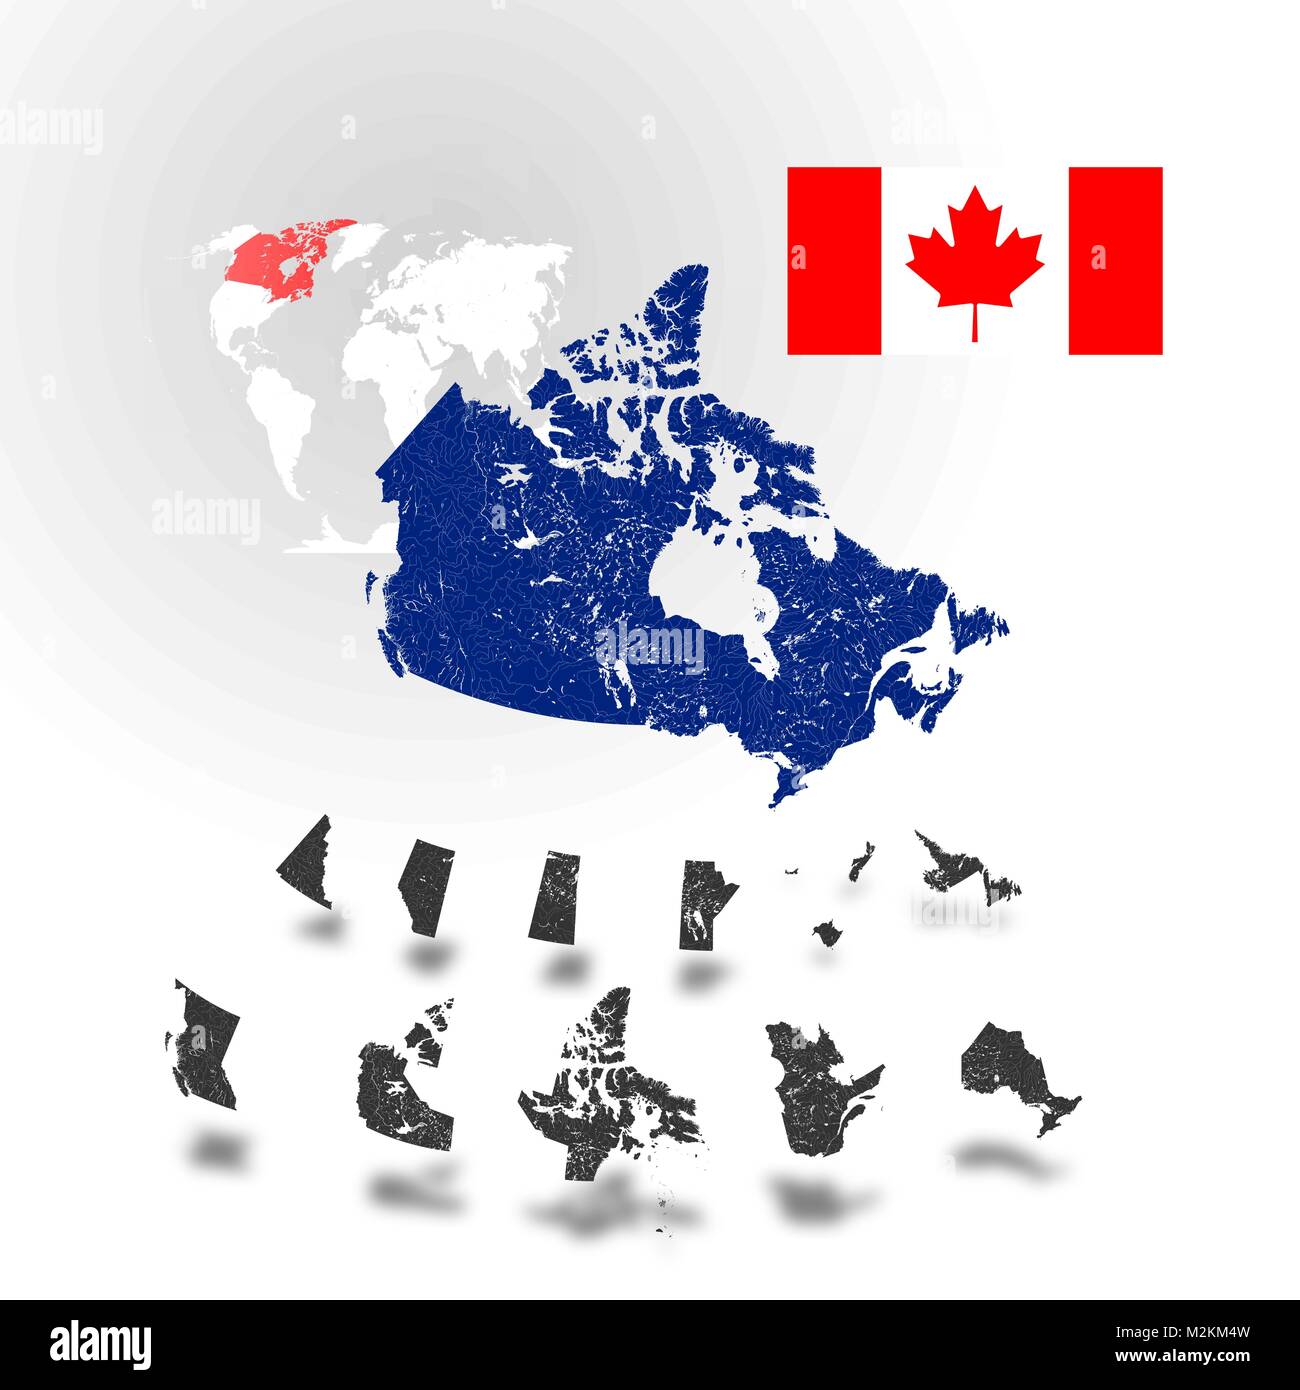 Carte du Canada avec des rivières et des lacs, des cartes des provinces et territoires, la carte du monde en arrière-plan et d'un drapeau du Canada. Merci de regarder mes autres images Illustration de Vecteur